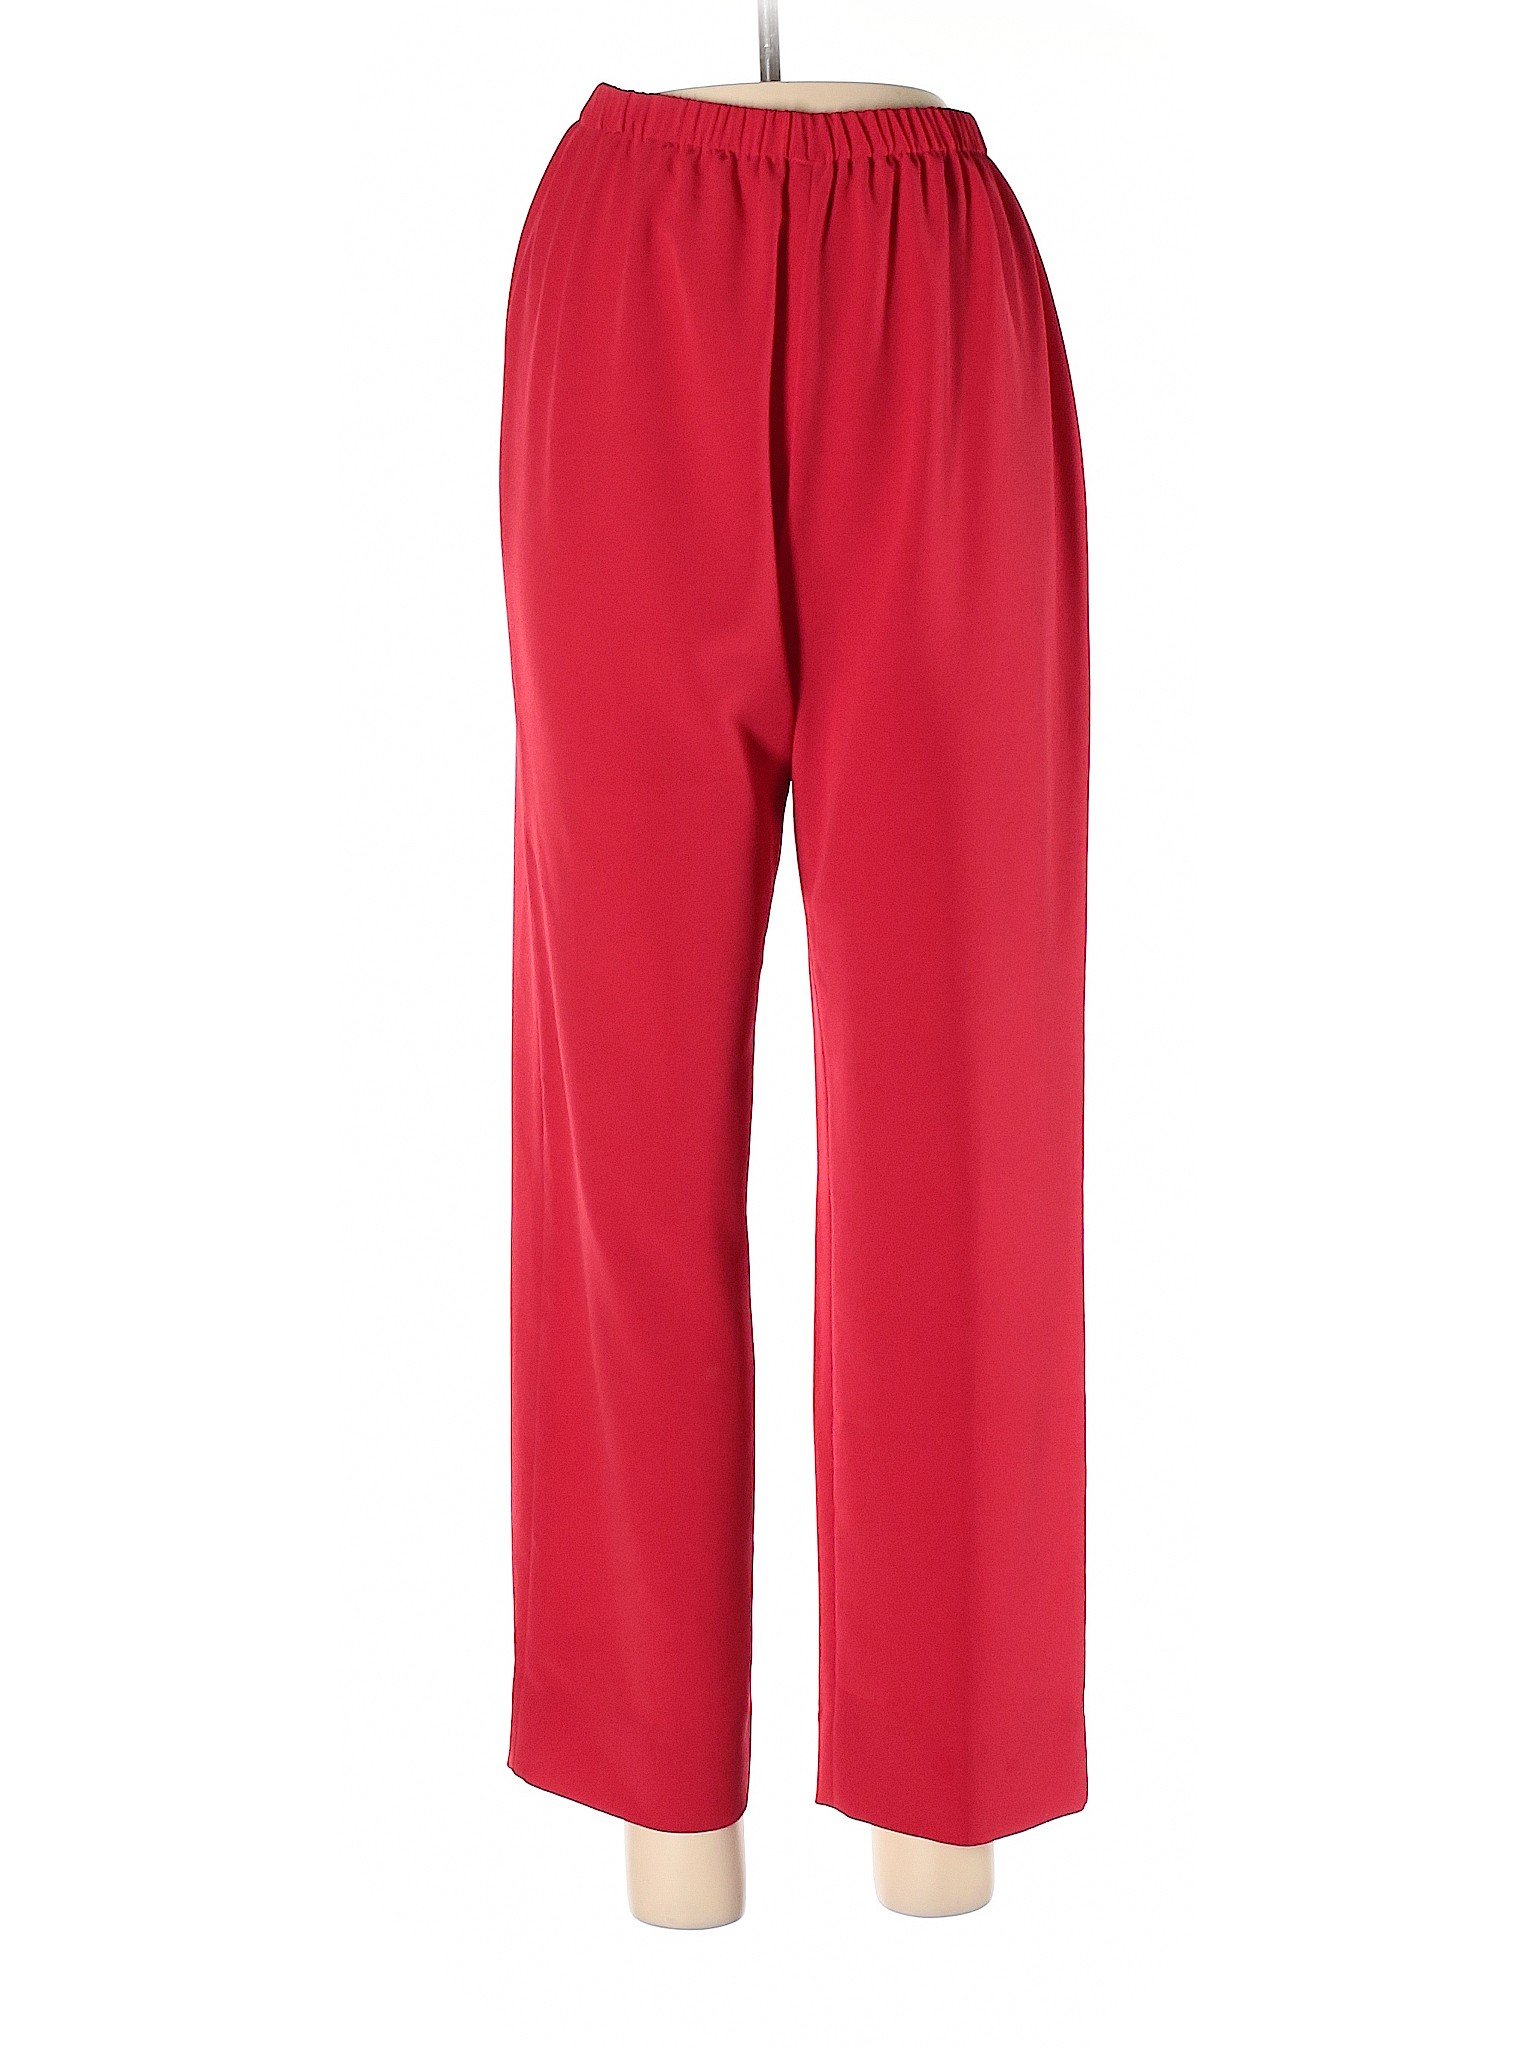 Draper's & Damon's Women Red Casual Pants 8 | eBay